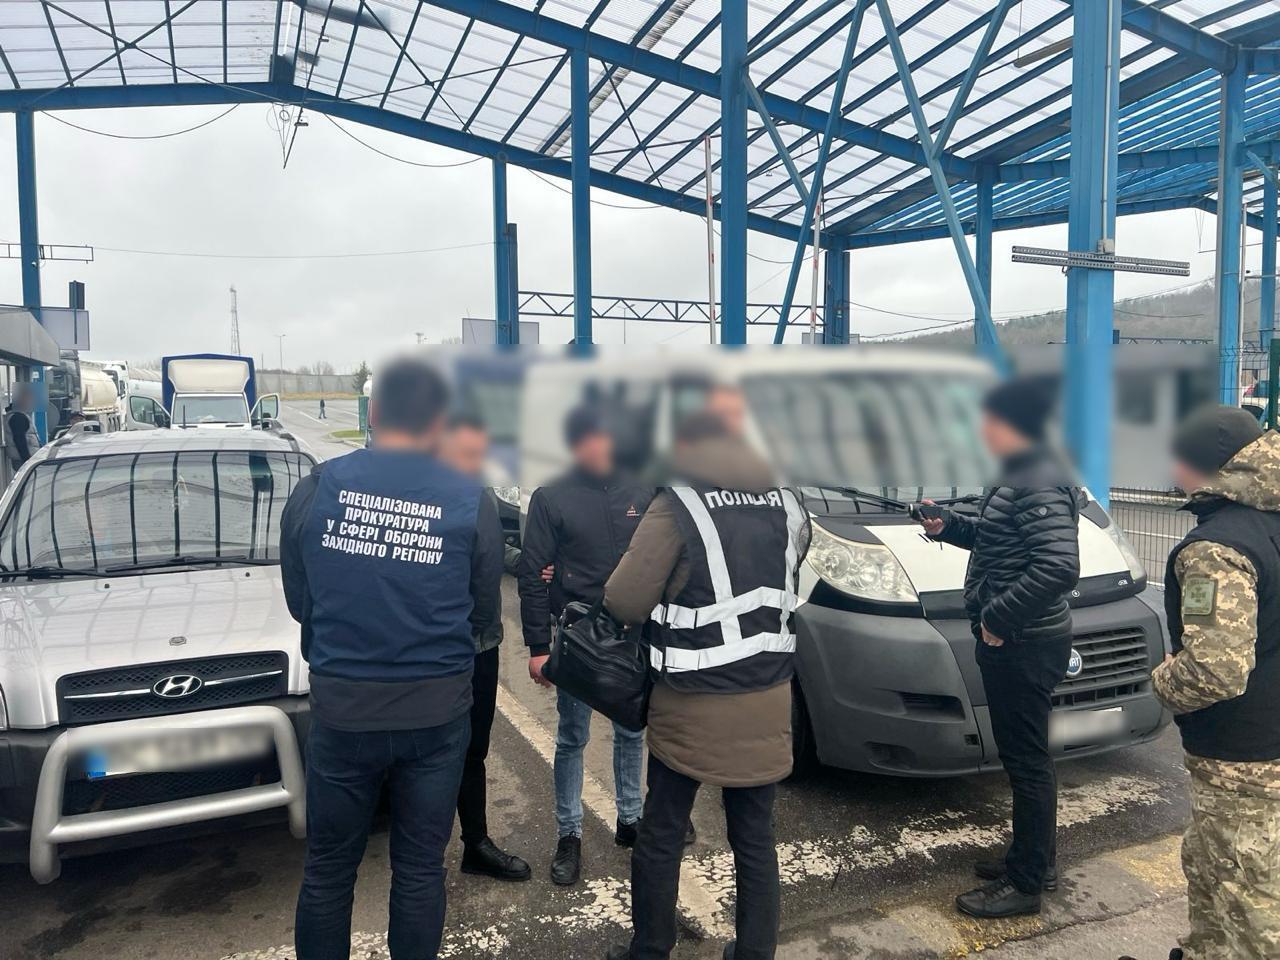 Сотрудники органов внутренней и внутренней безопасности и оперативно-розыскного подразделения Львовского пограничного отряда выявили украинца, который незаконно намеревался пересечь государственную границу.